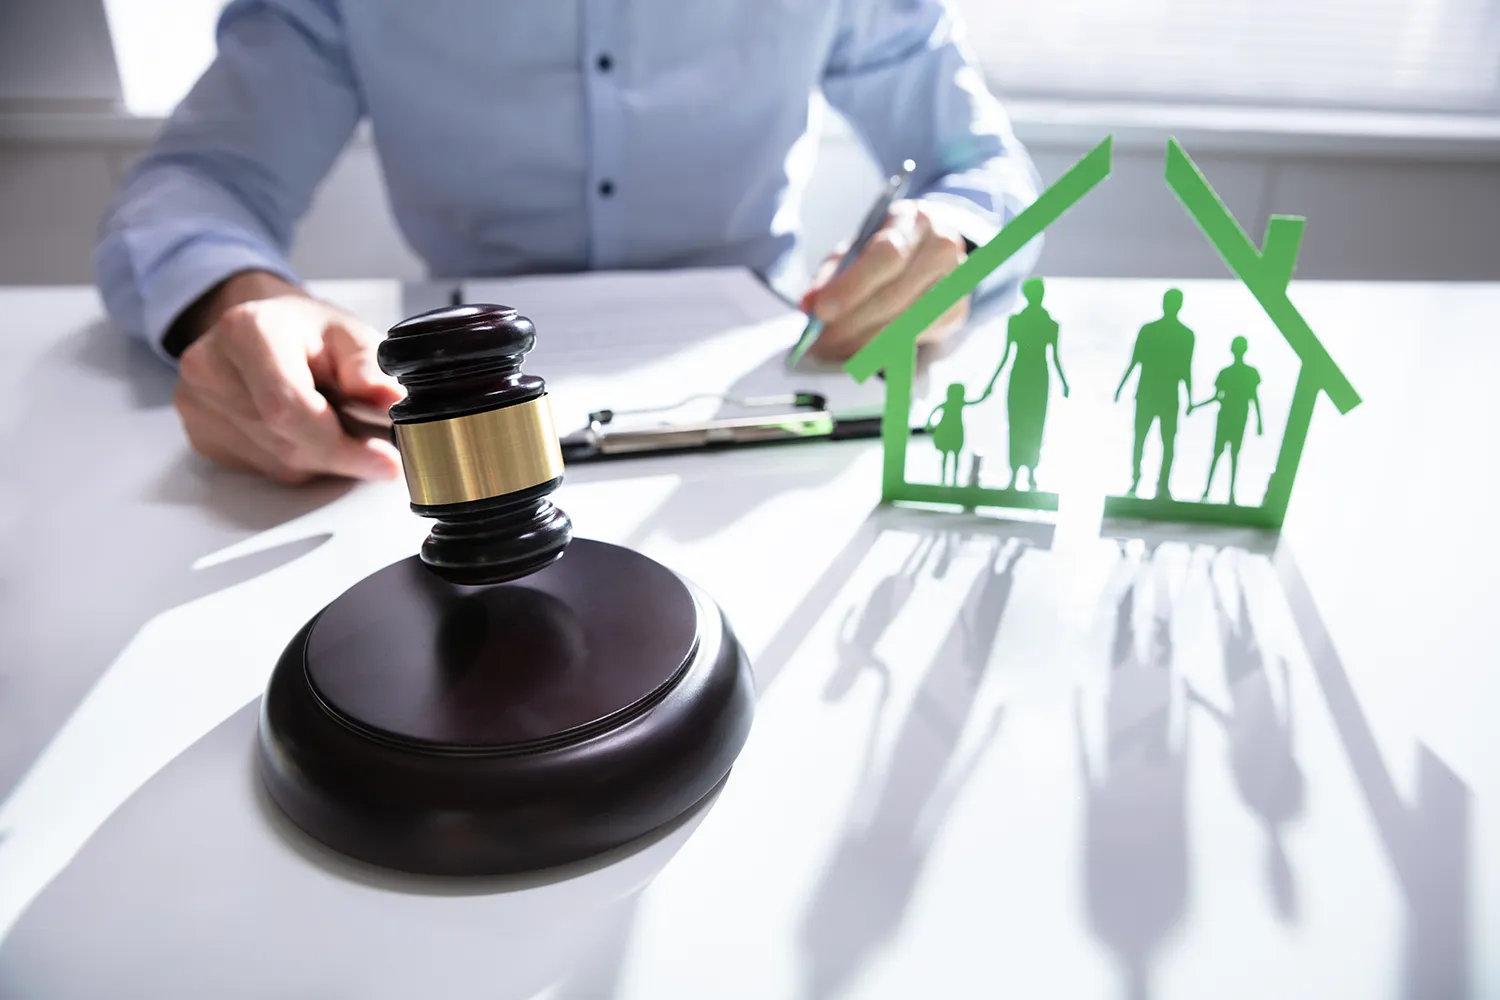 이혼으로 인해 가족과 집의 분리를 보여주는 판사봉 클로즈업